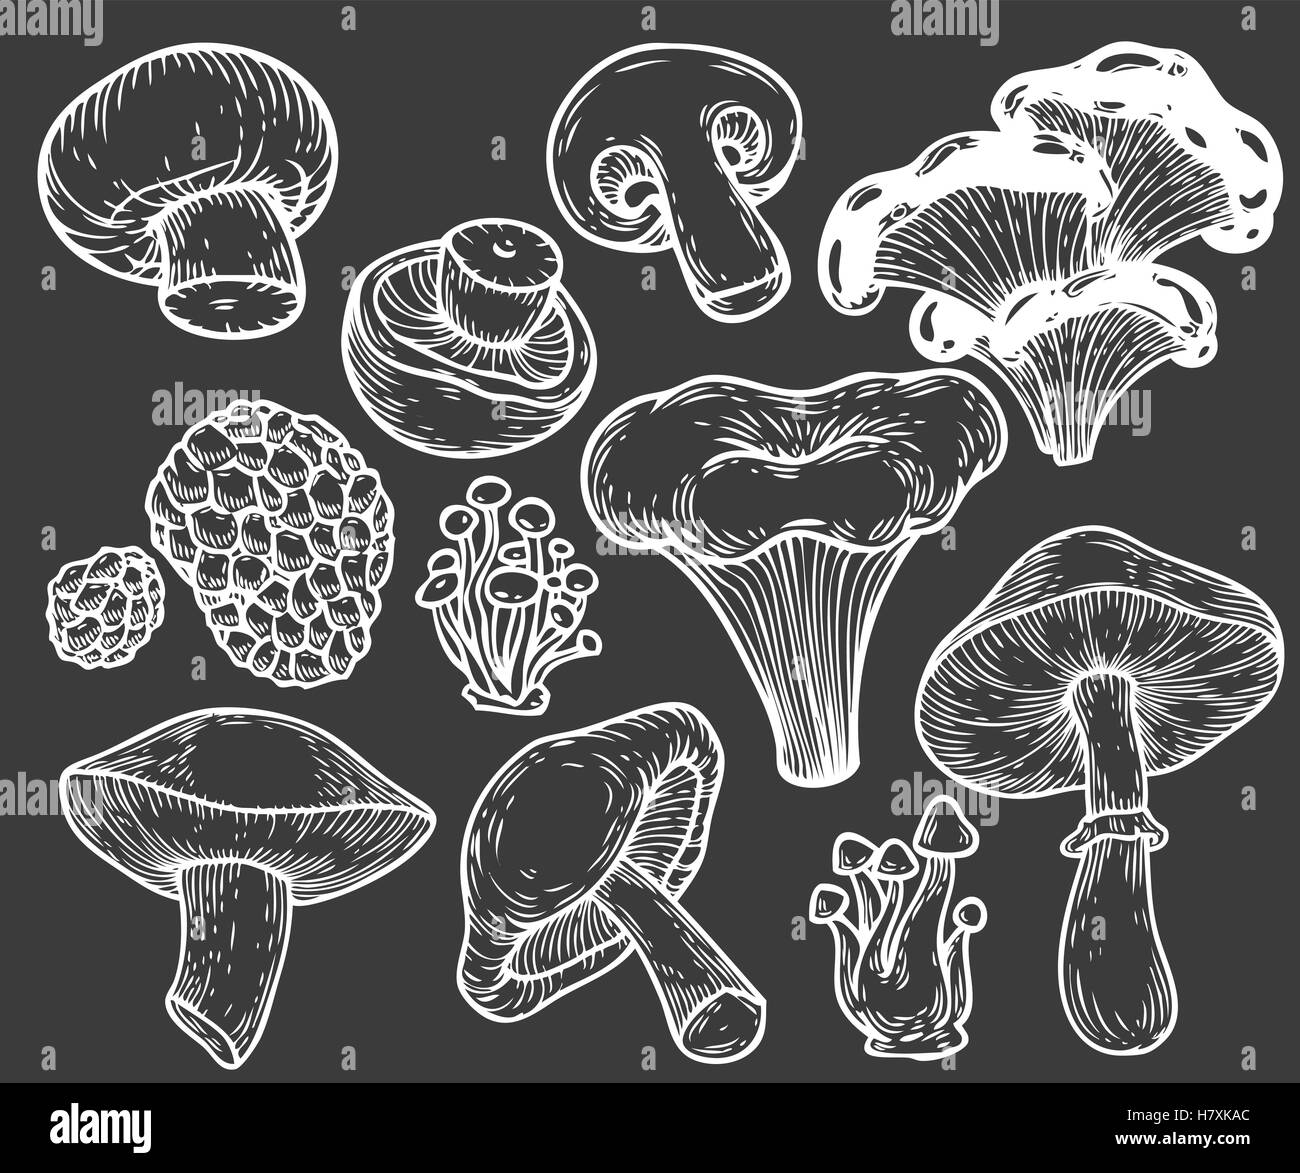 Mano a fungo bozzetto illustrazione vettoriale. Funghi shiitake, tartufo, chanterelle, champignon, enokitake, miele agaric, oy Illustrazione Vettoriale